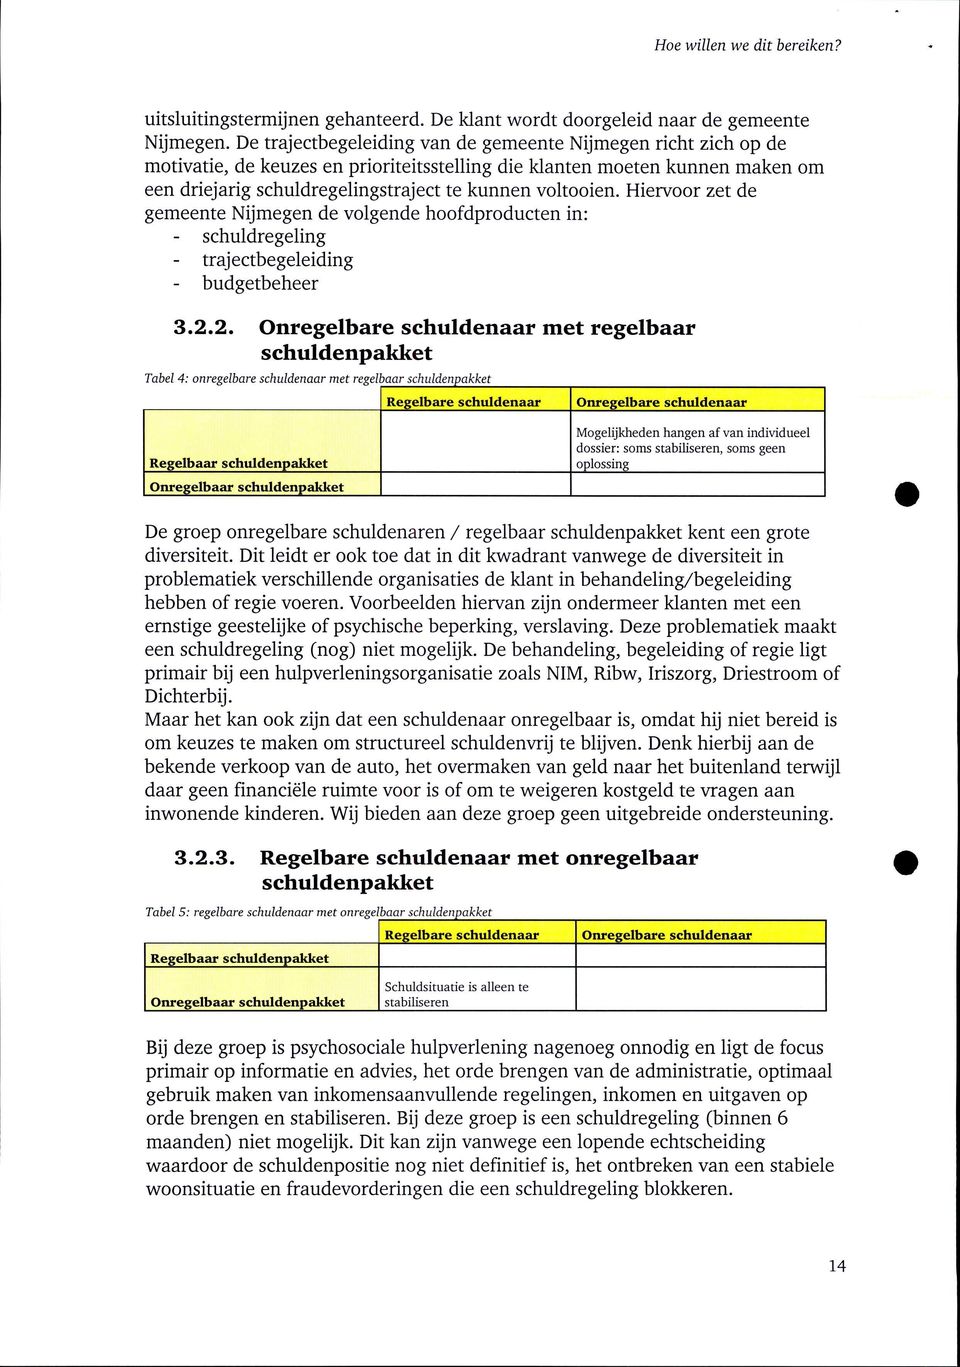 Hiervoor zet de gemeente Nijmegen de volgende hoofdproducten in: - schuldregeling - trajectbegeleiding - budgetbeheer 3.2.